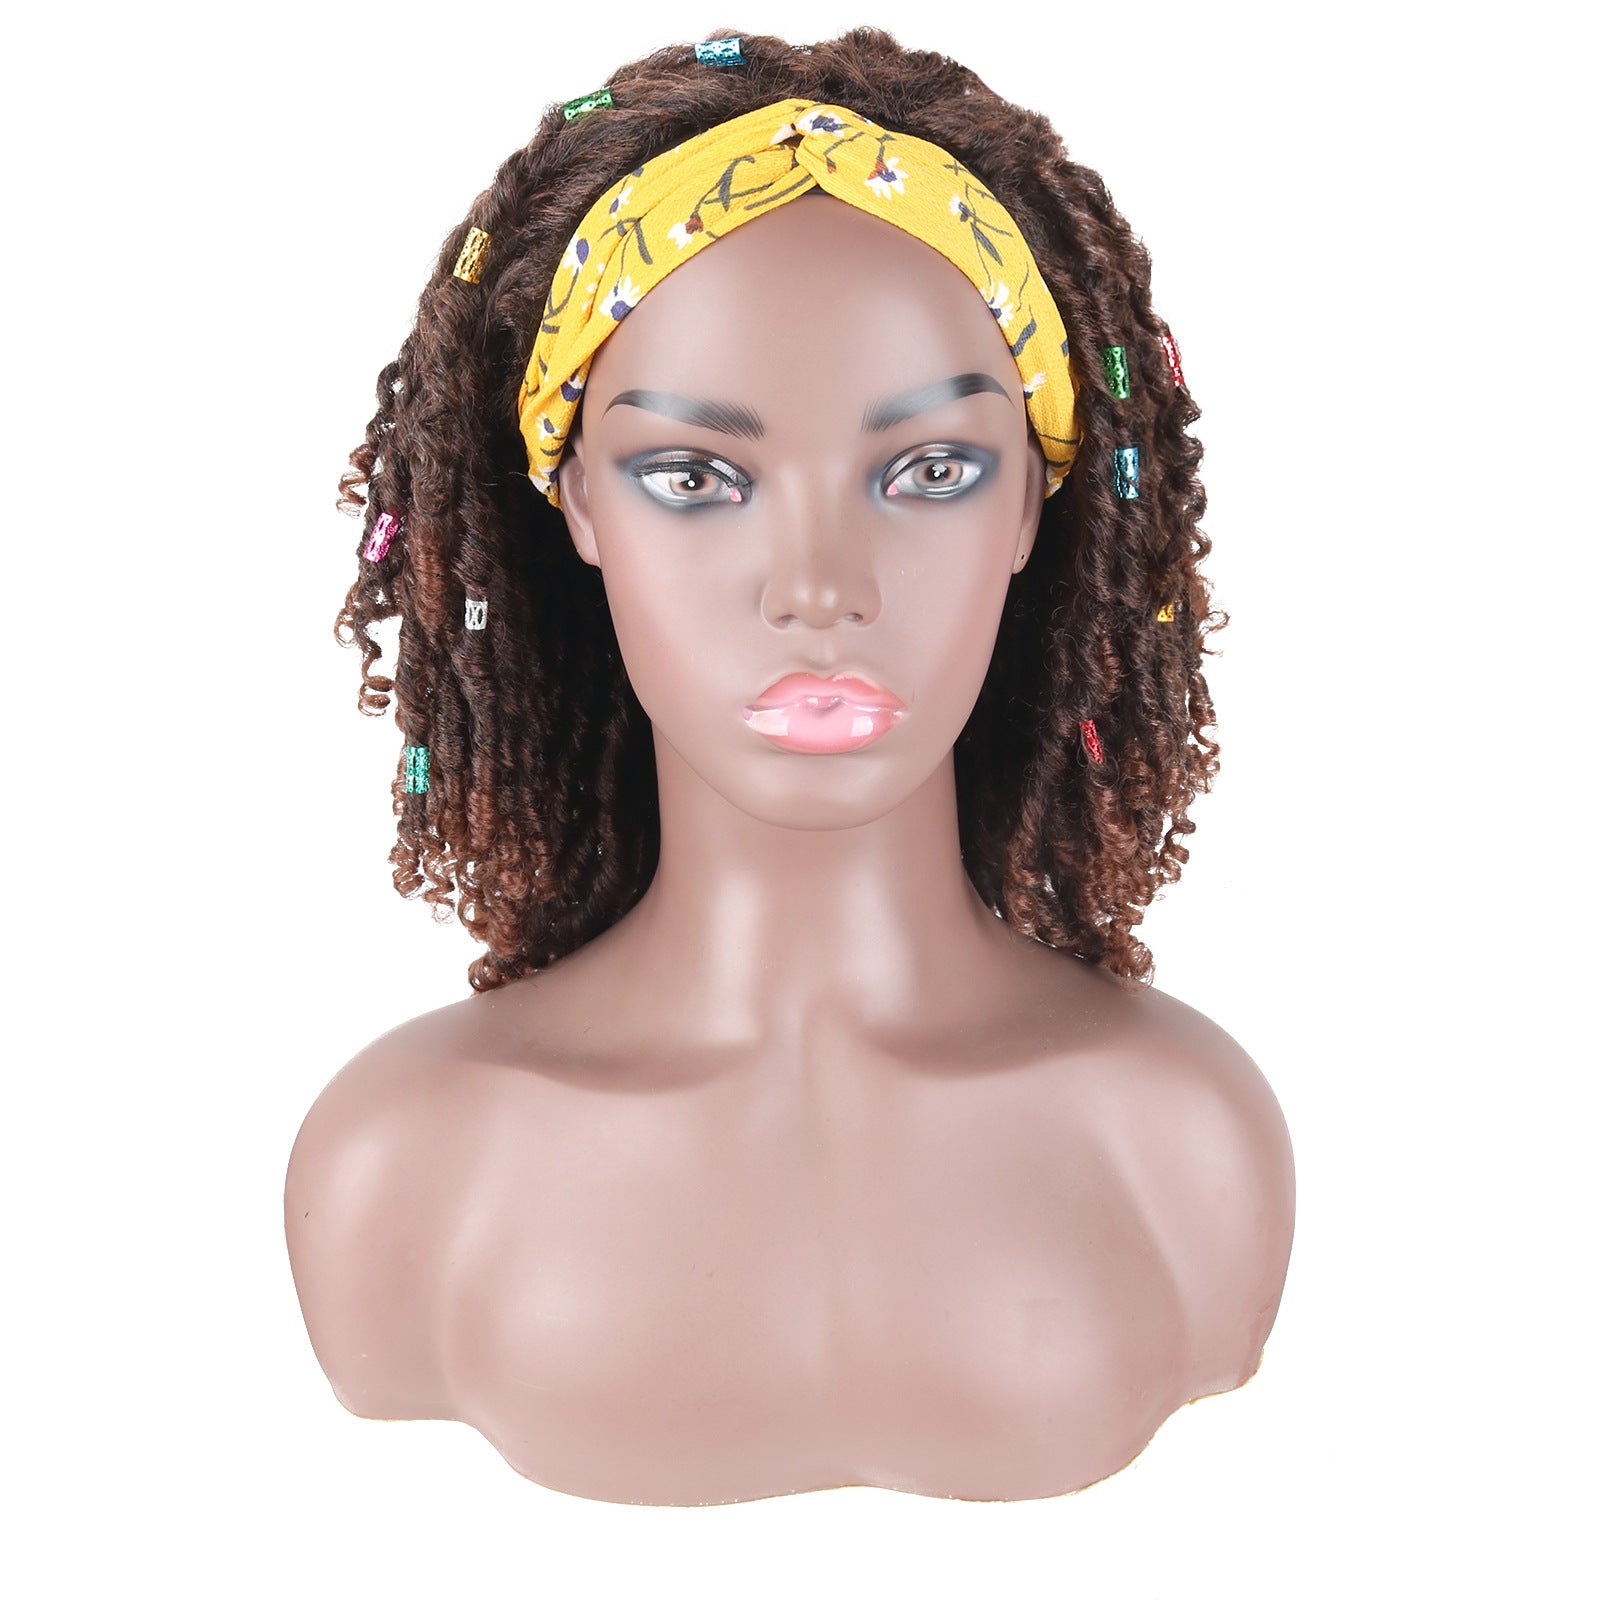 Hair band wig small curl Crochet hair wigs fashion women's hair band Headcover